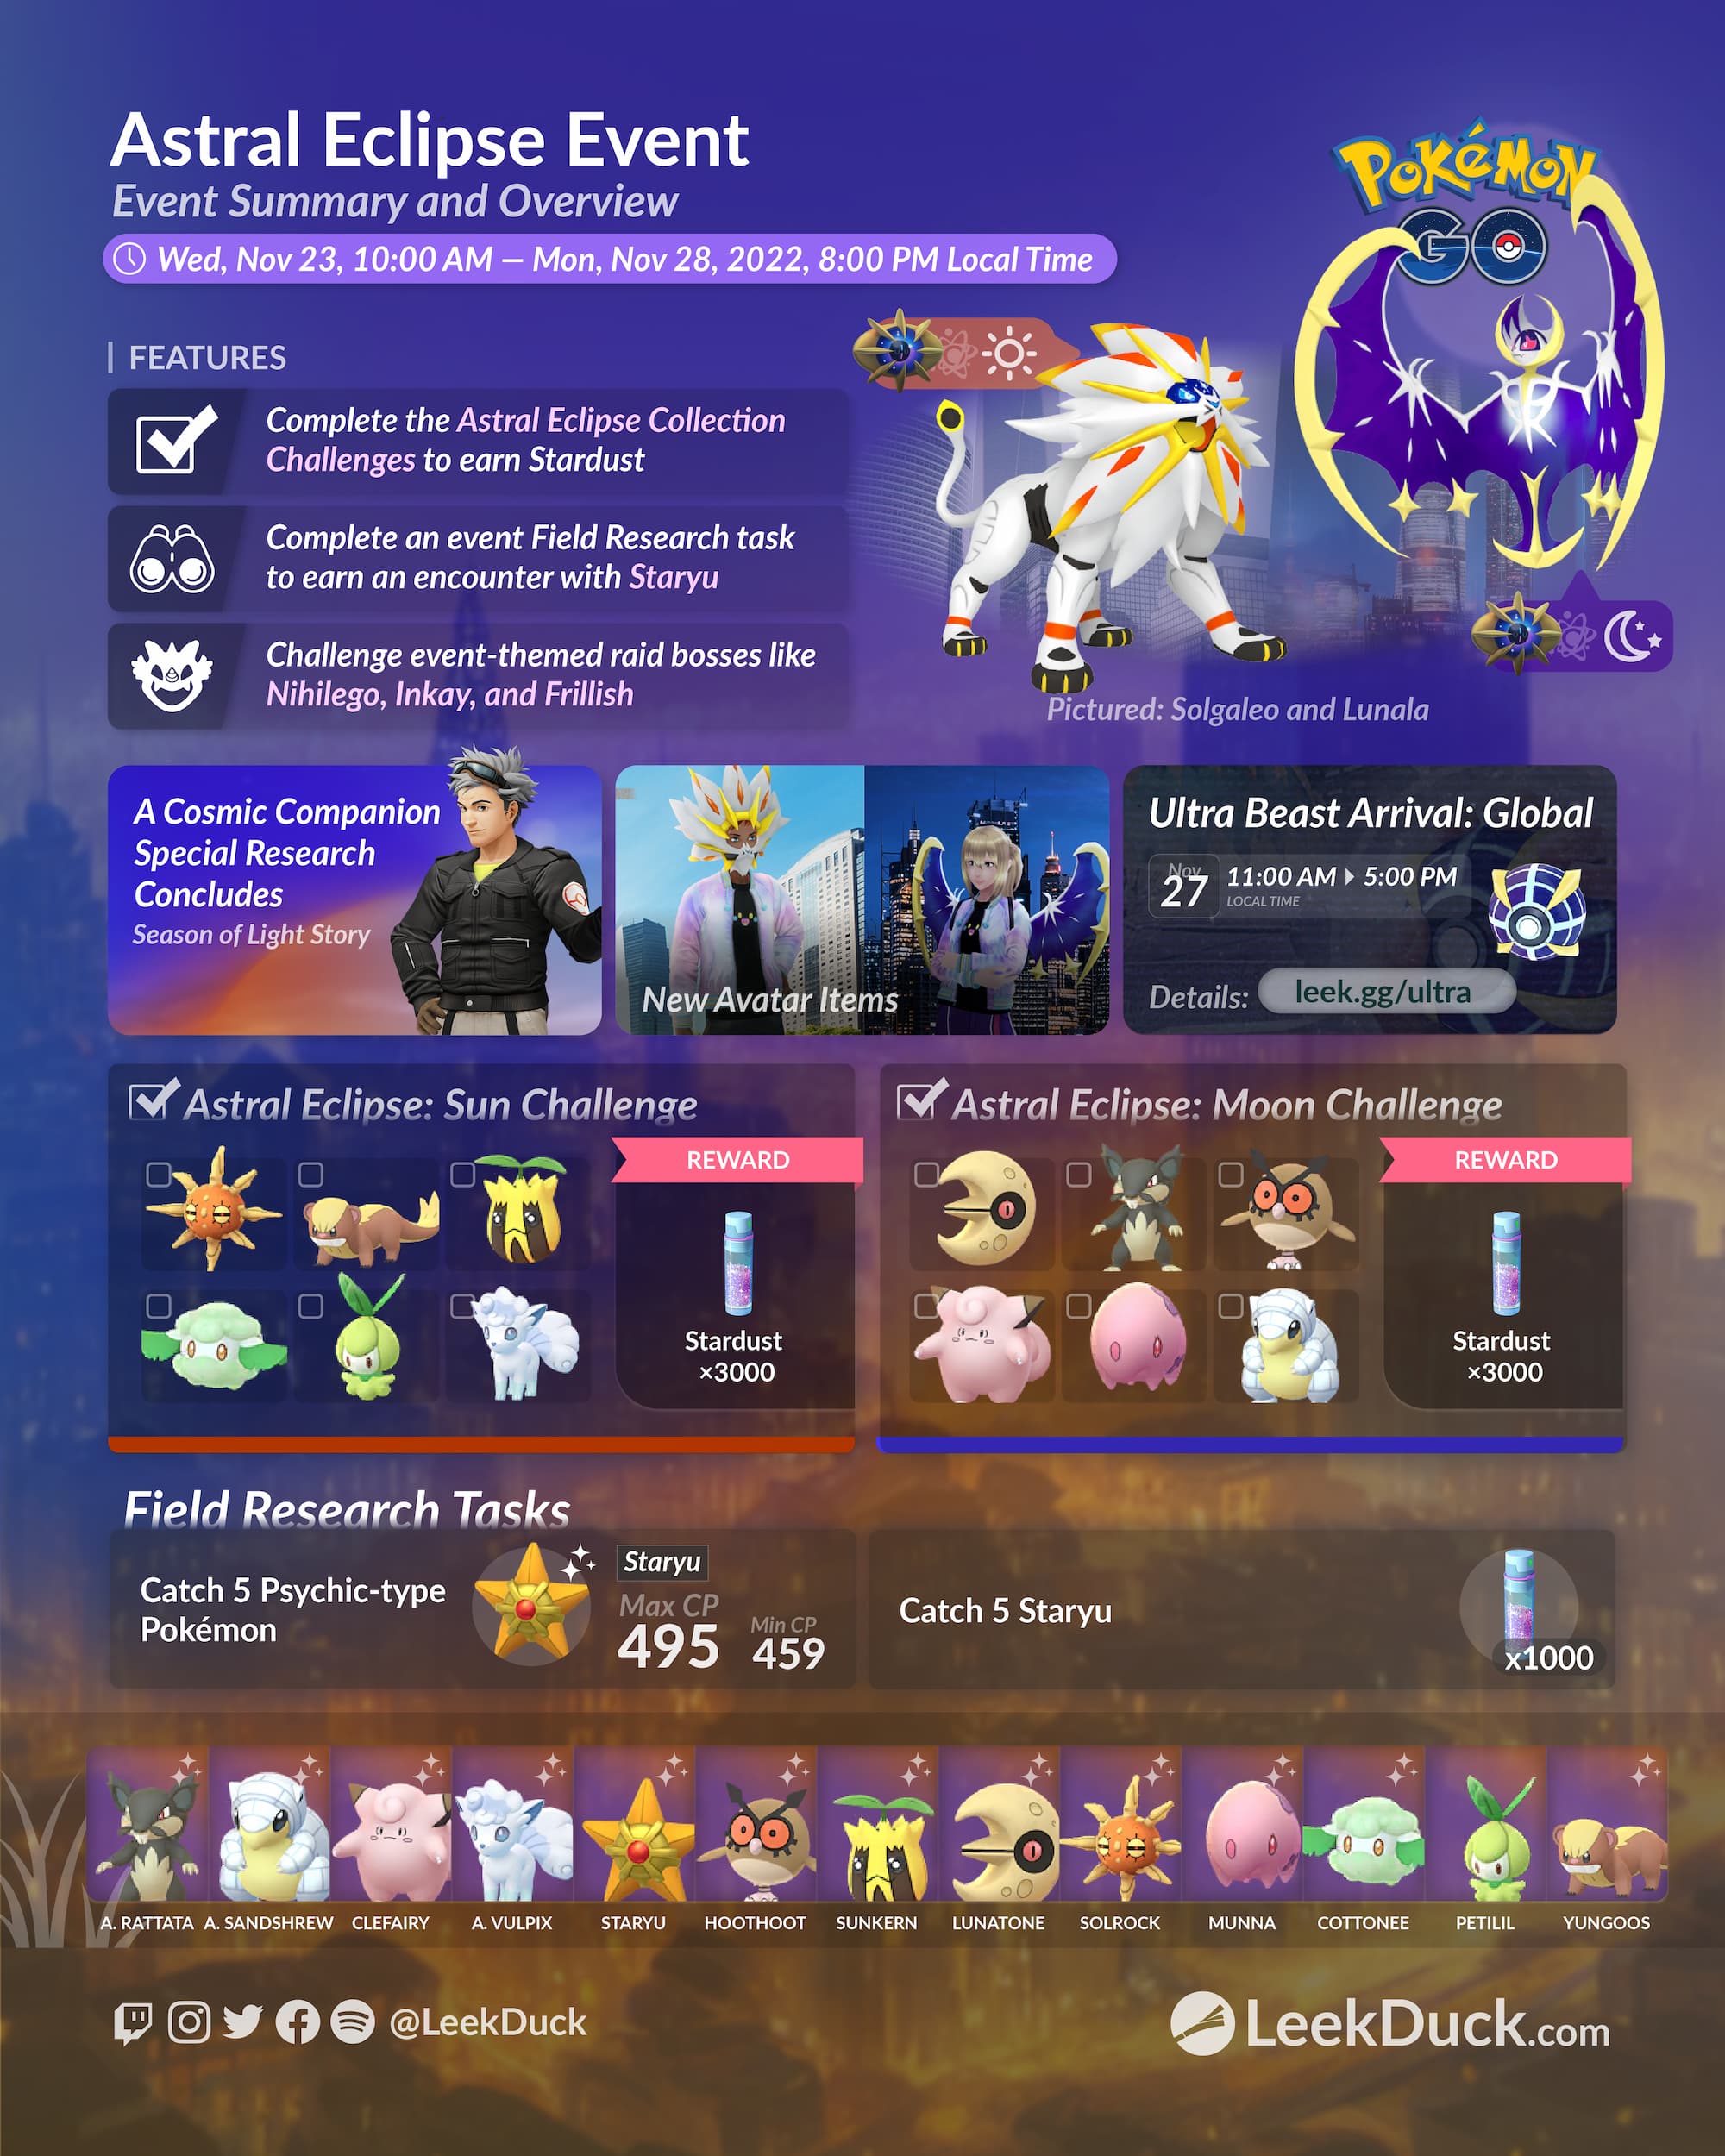 Pokémon GO - Ultra Beast Arrival: Global - Sunday, November 27th, 2022 